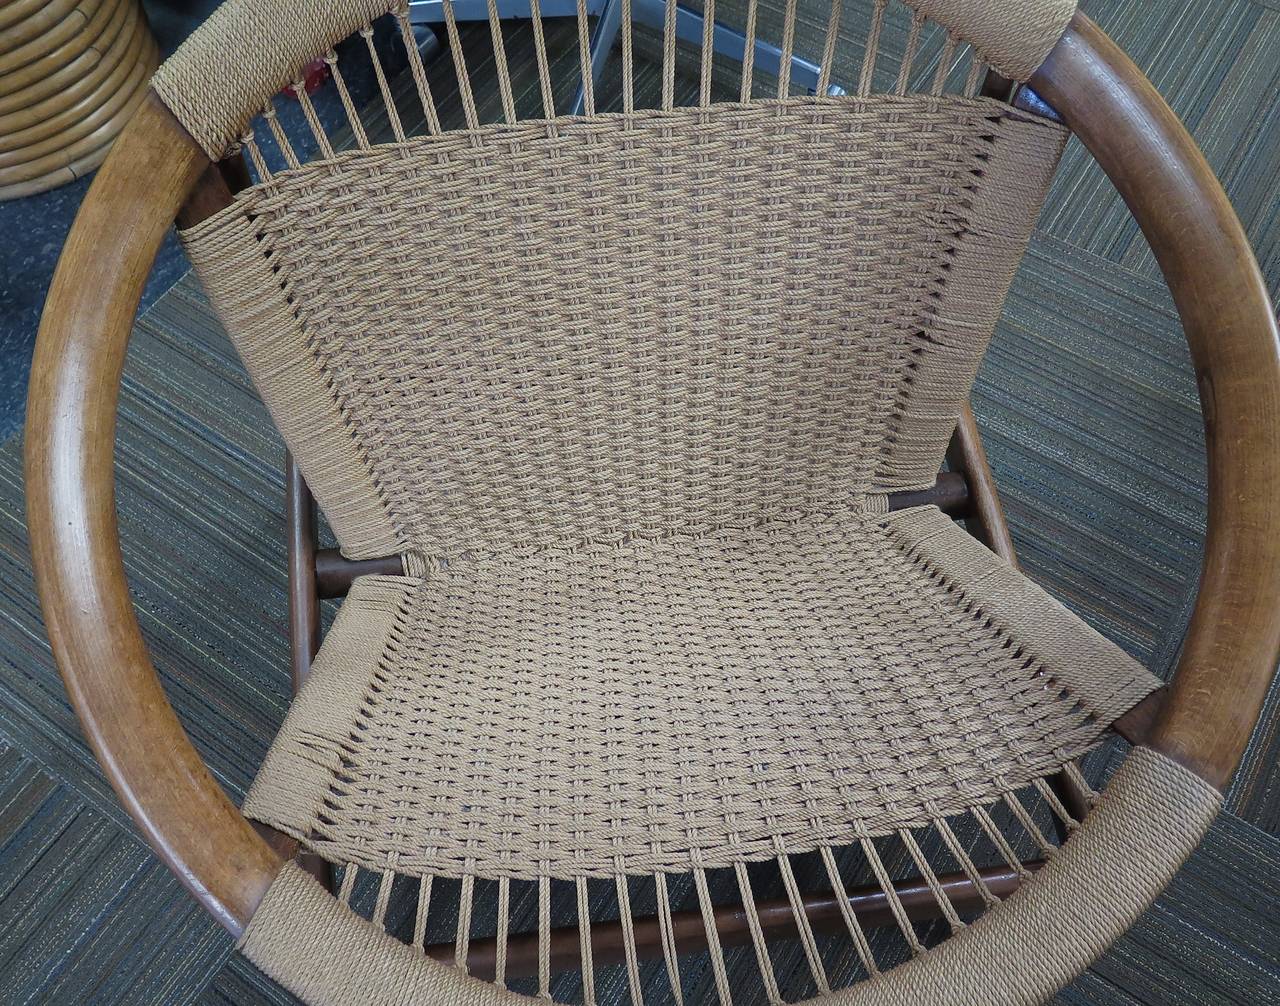 Danish Illum Wikkelso Ringstol Chair, 1950